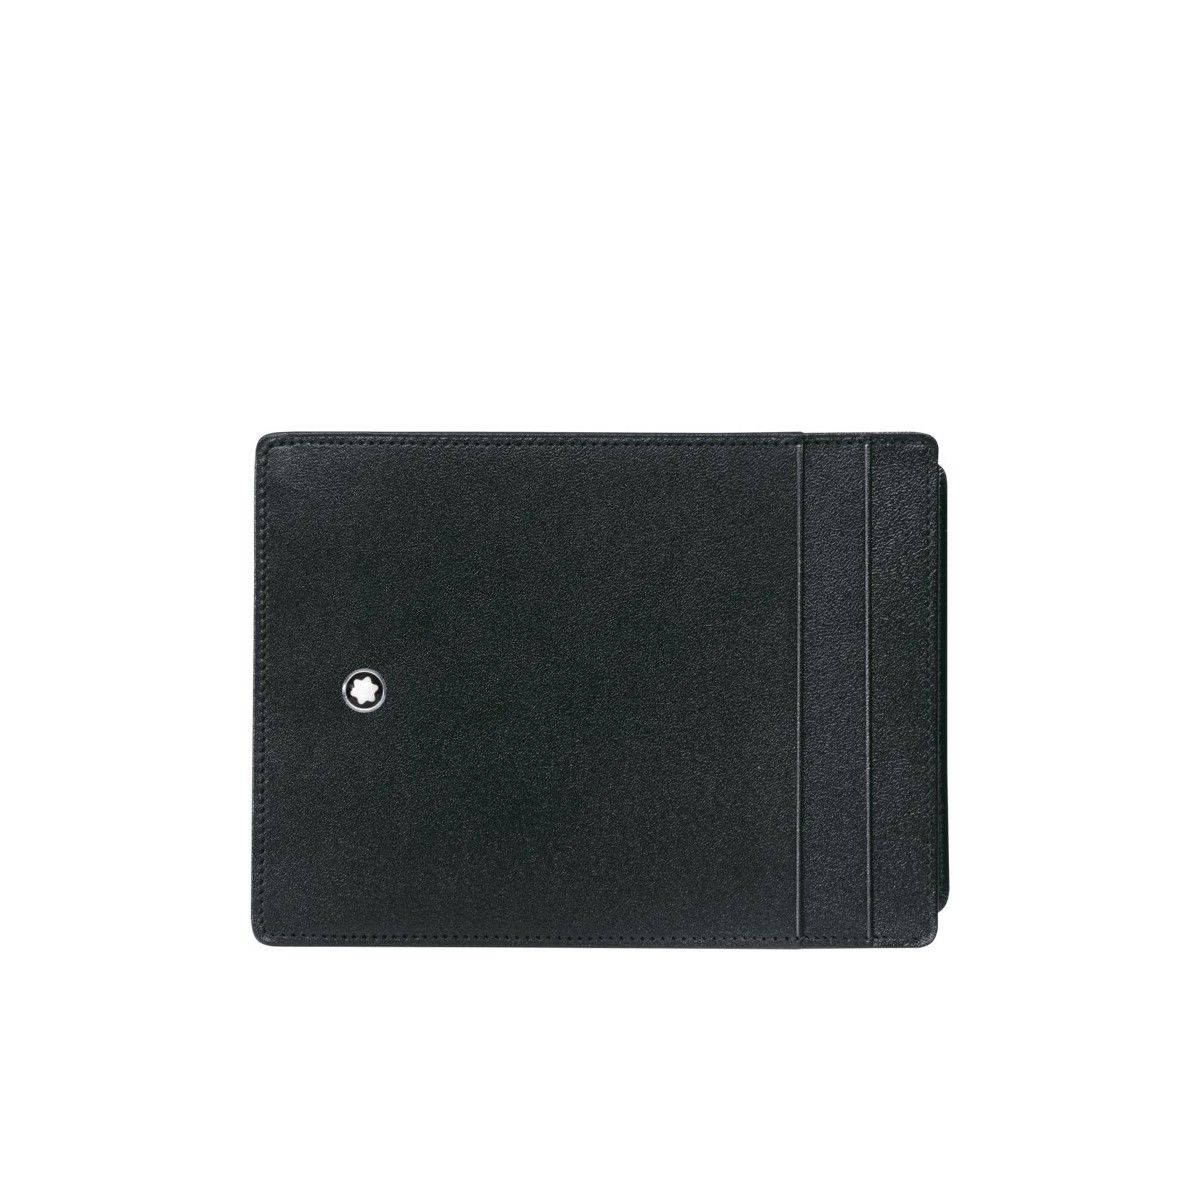 Portafogli tascabile 4 scomparti Meisterstück con portadocumento